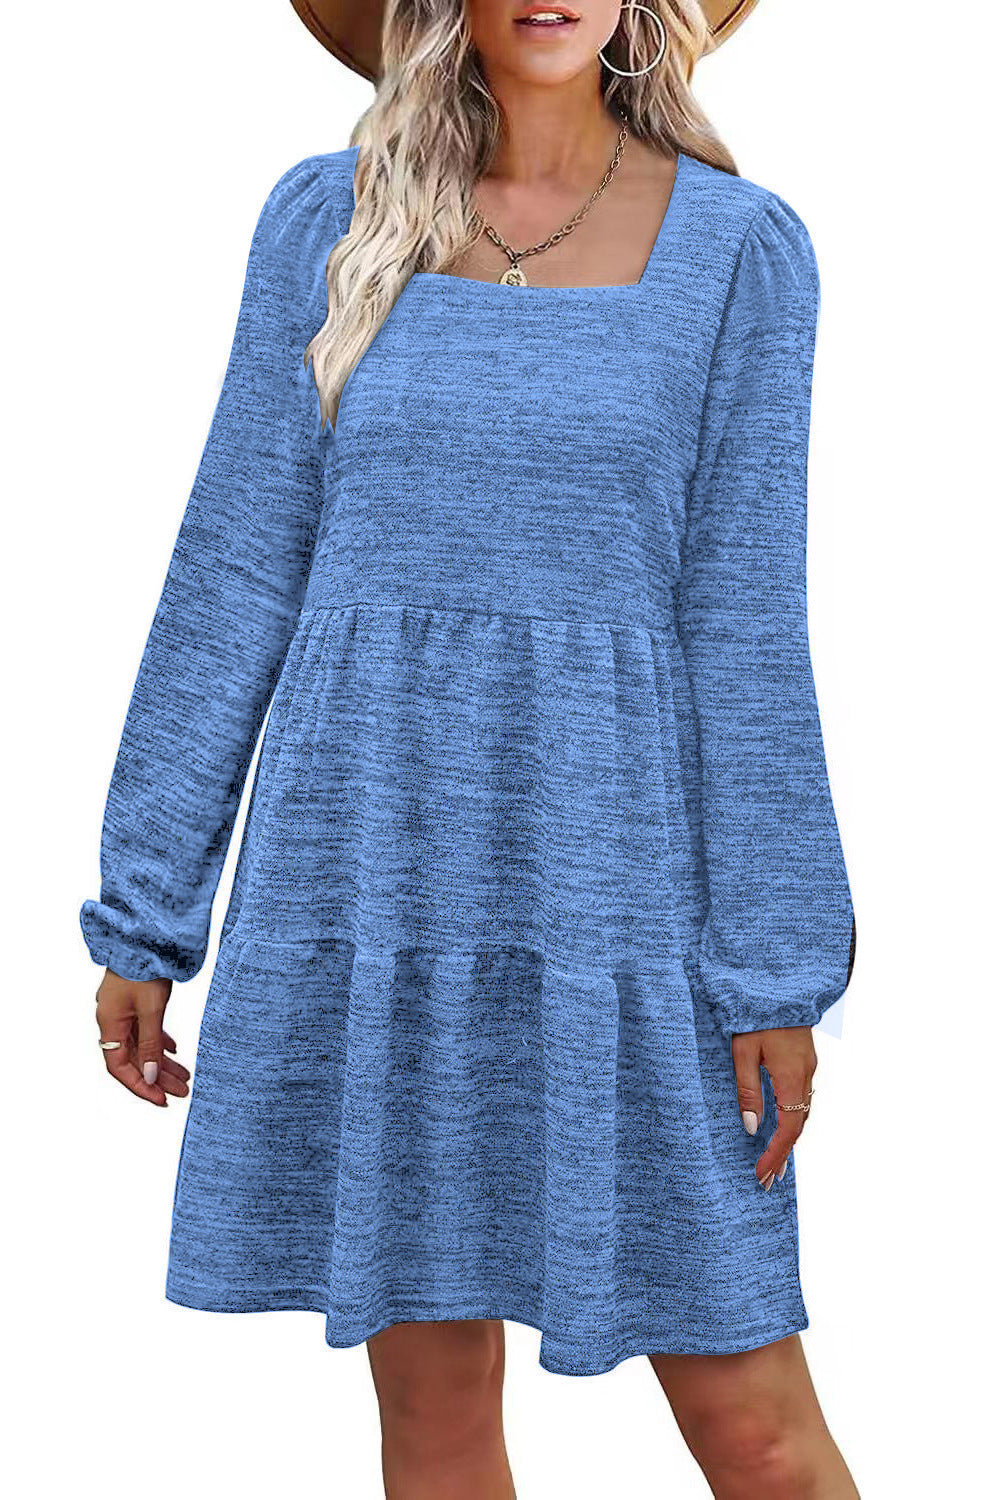 Fashion Square Neckline Fall Mini Dresses-Dresses-Lake Blue-S-Free Shipping at meselling99